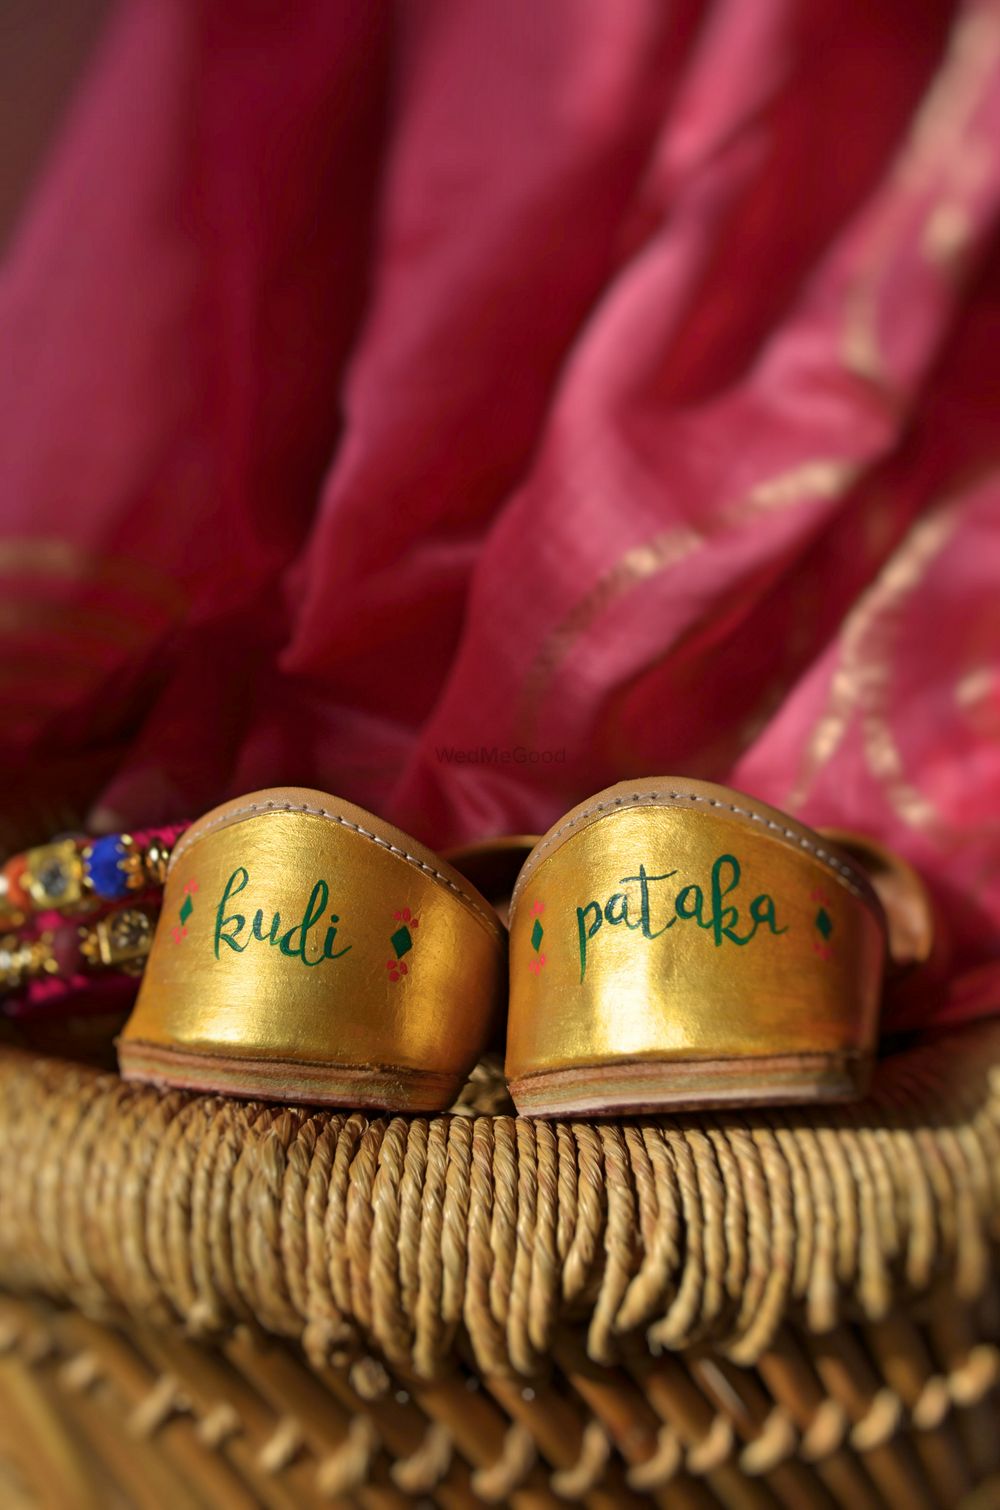 Photo of Cute bridal juttis with pataka written